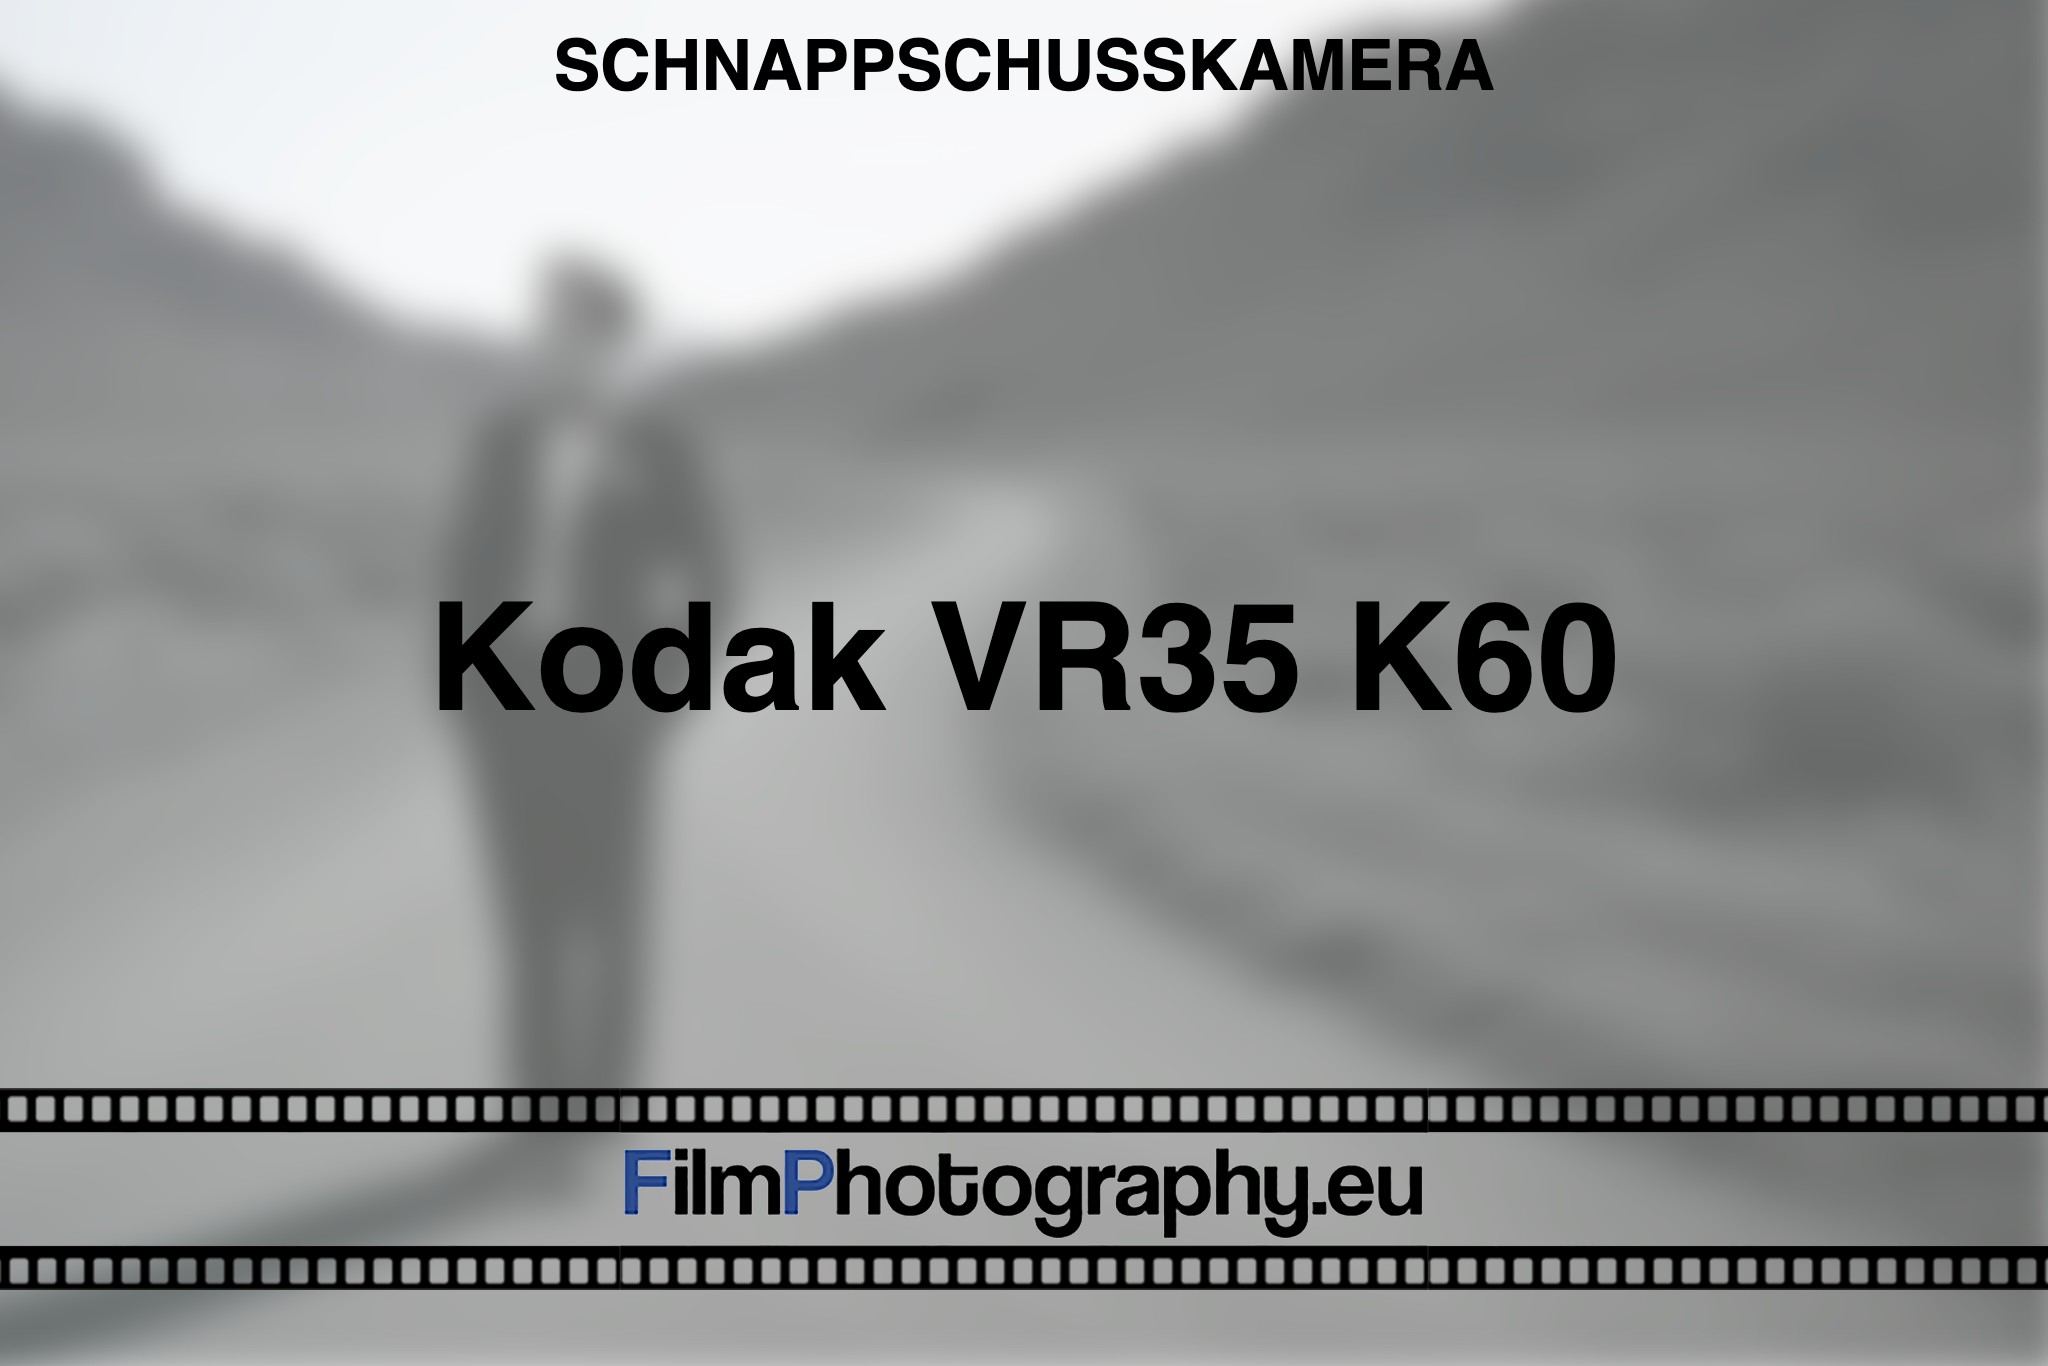 kodak-vr35-k60-schnappschusskamera-bnv